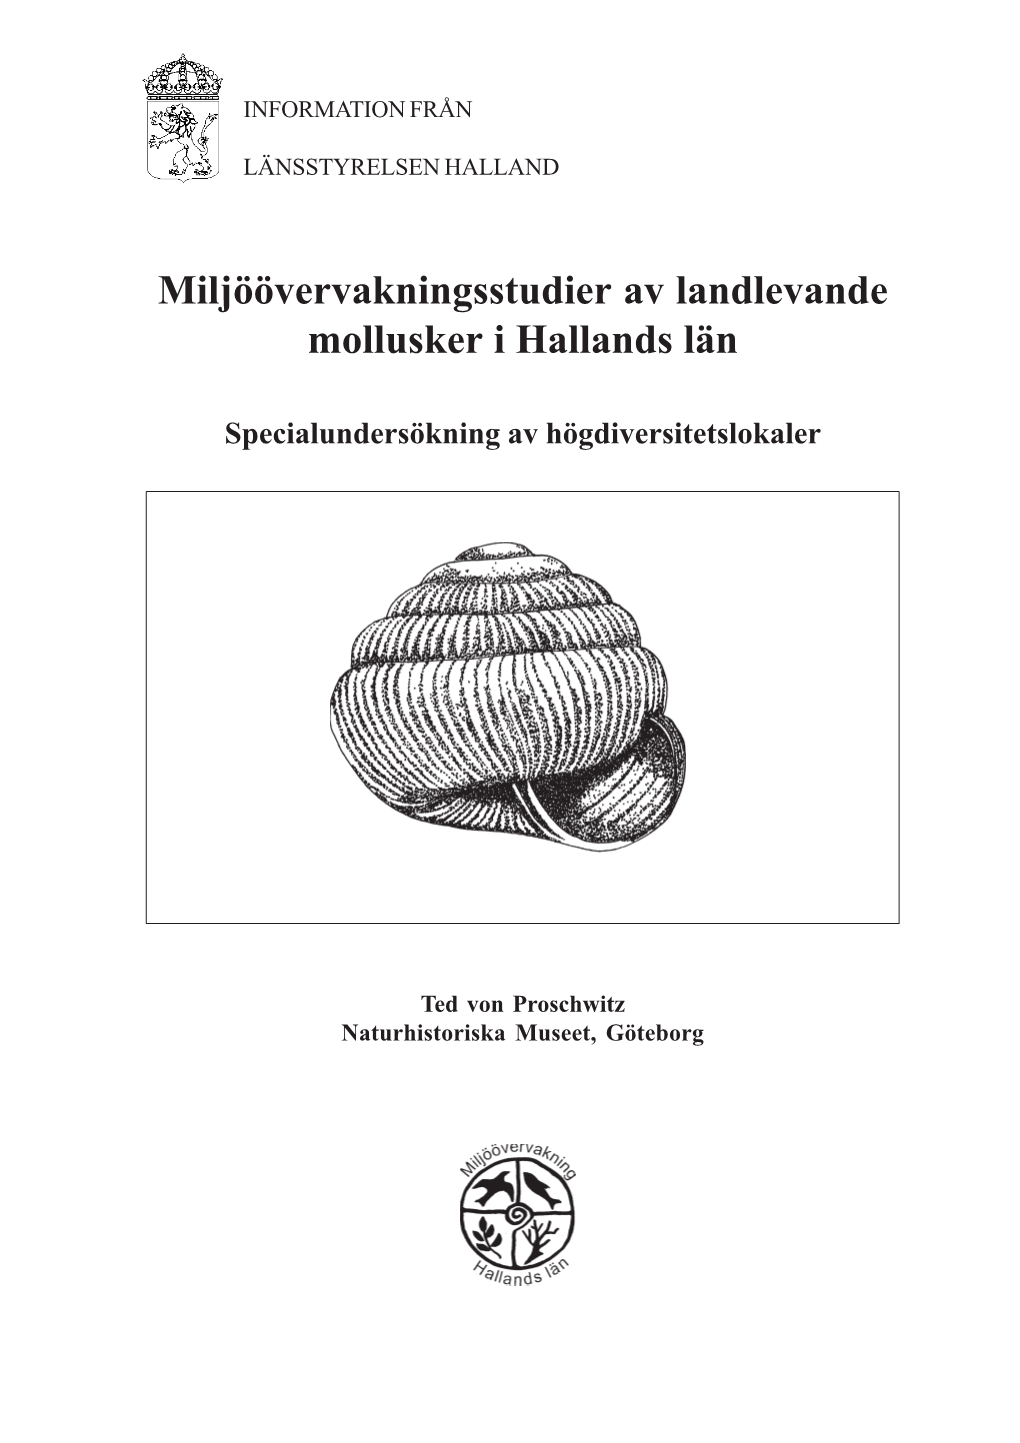 Inventering Av Landlevande Mollusker I Hallands